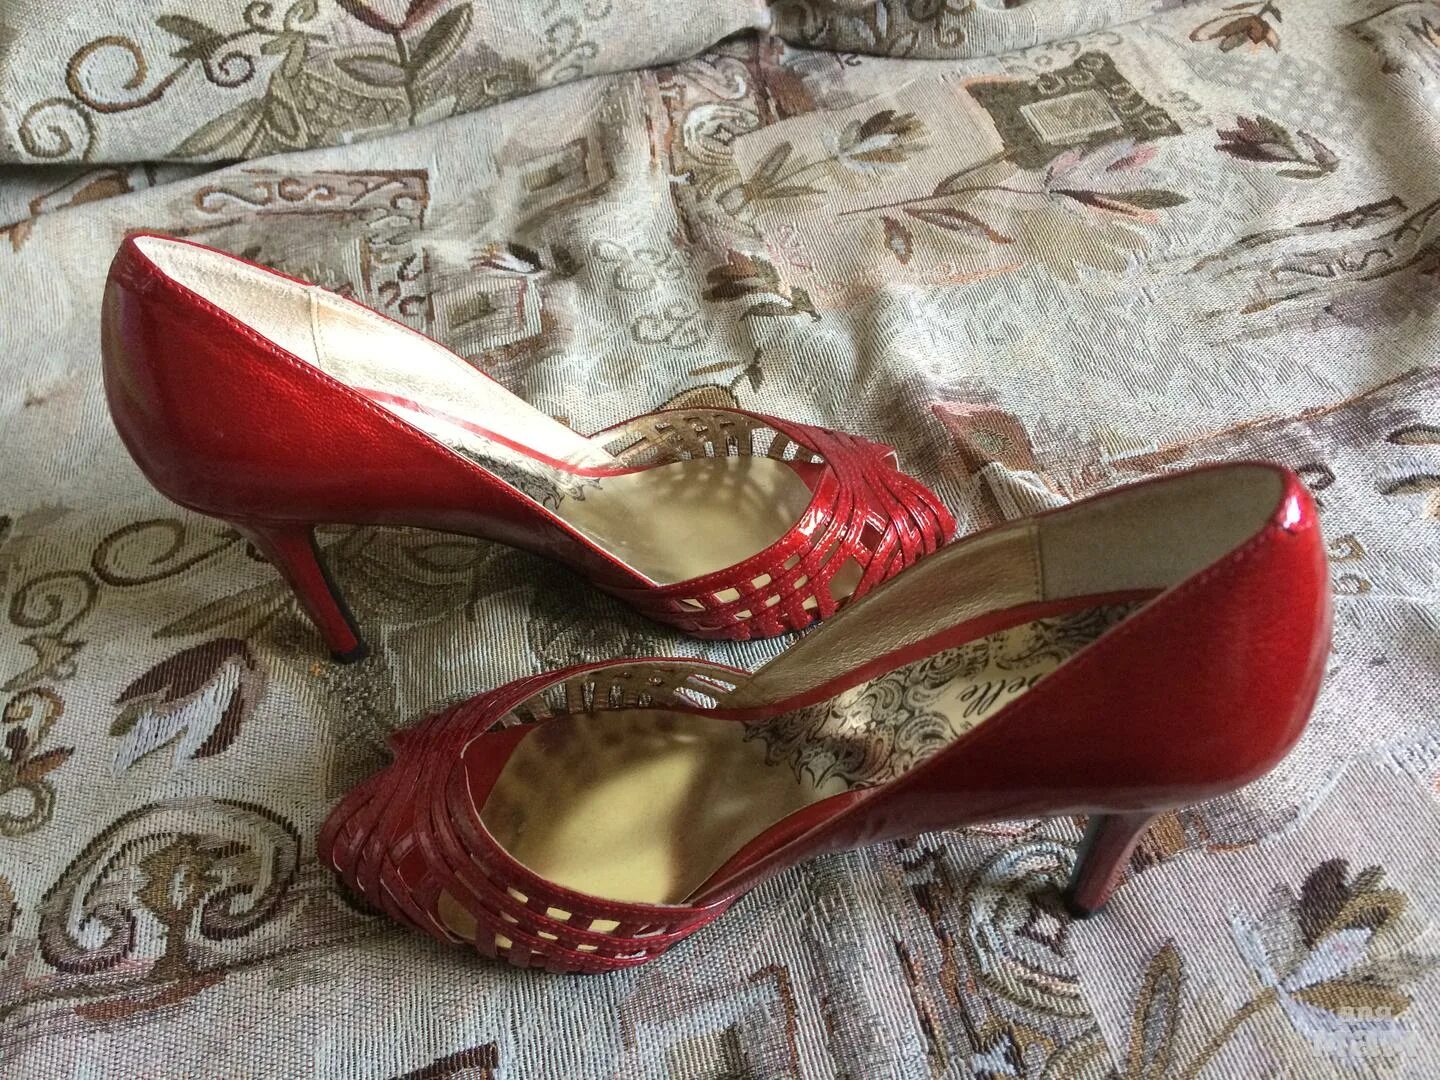 Авито туфли женские. Авито обувь женская. Авито туфли красные женские. Авито туфли женские 37 размер.